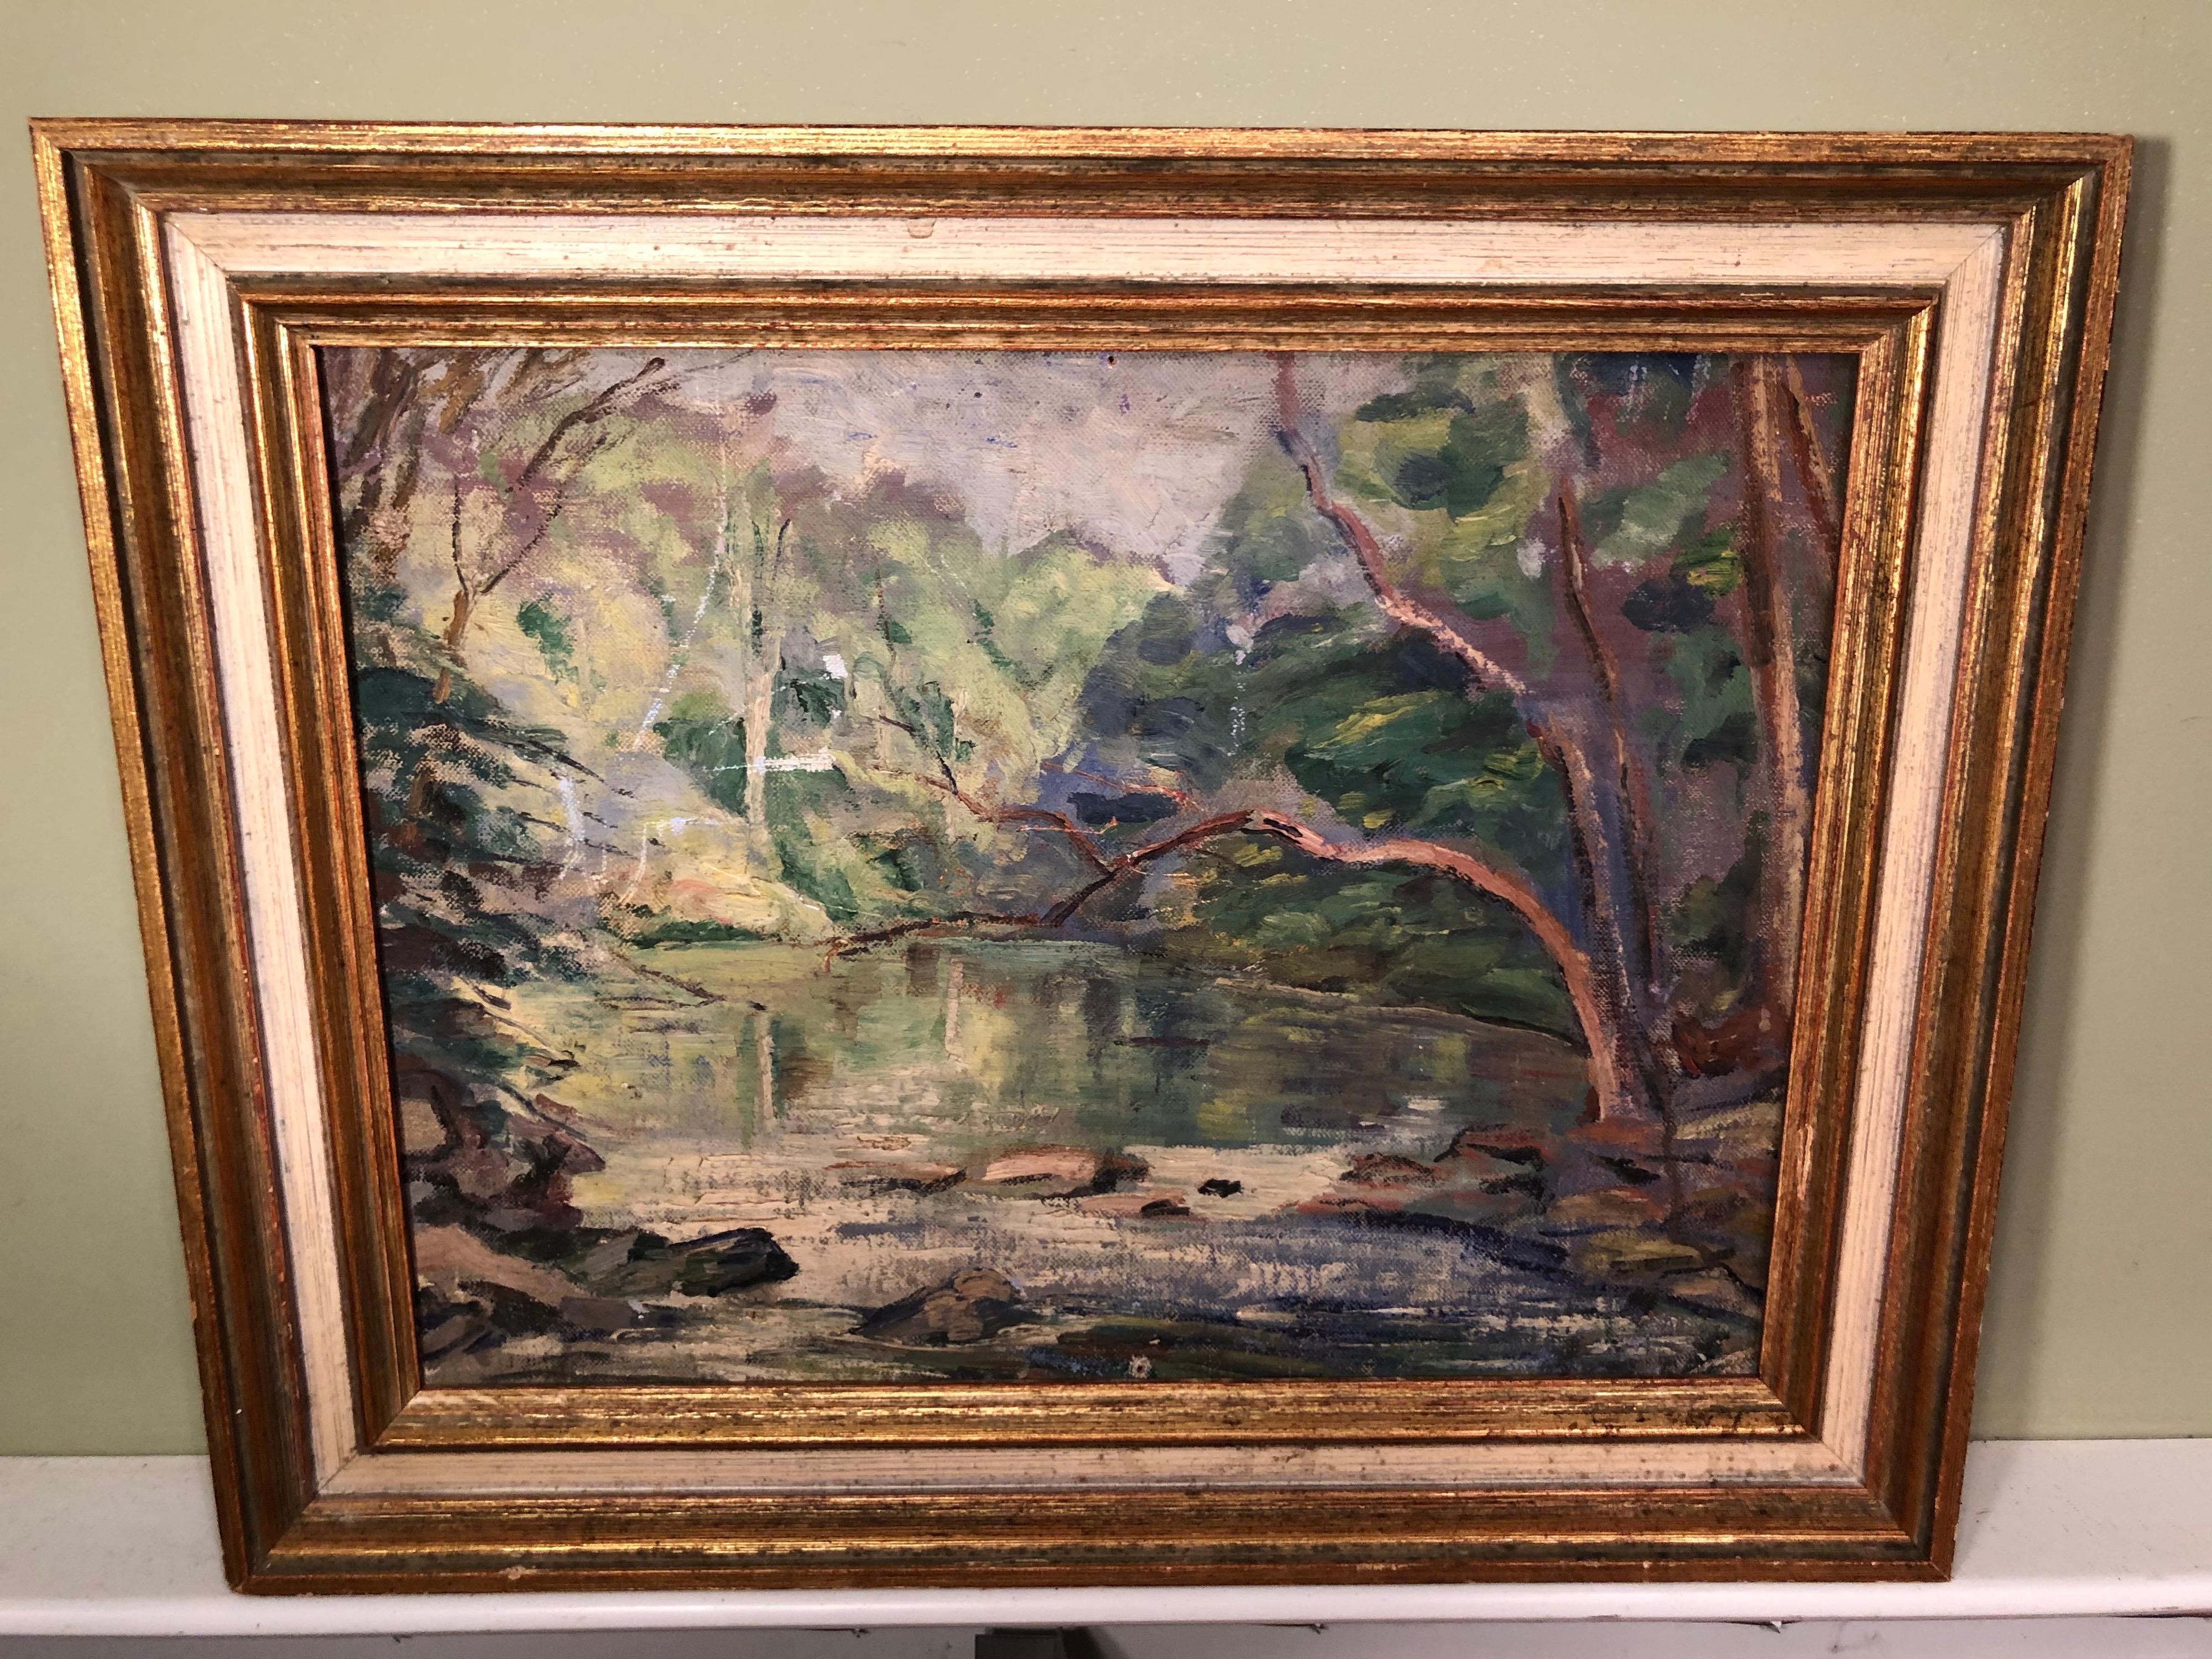 Gemälde eines Baches aus dem frühen 20. Jahrhundert. Diese süße bukolische und idyllische Umgebung bringt dem Betrachter viel Ruhe. Gerahmt in einem massiven Holzrahmen.